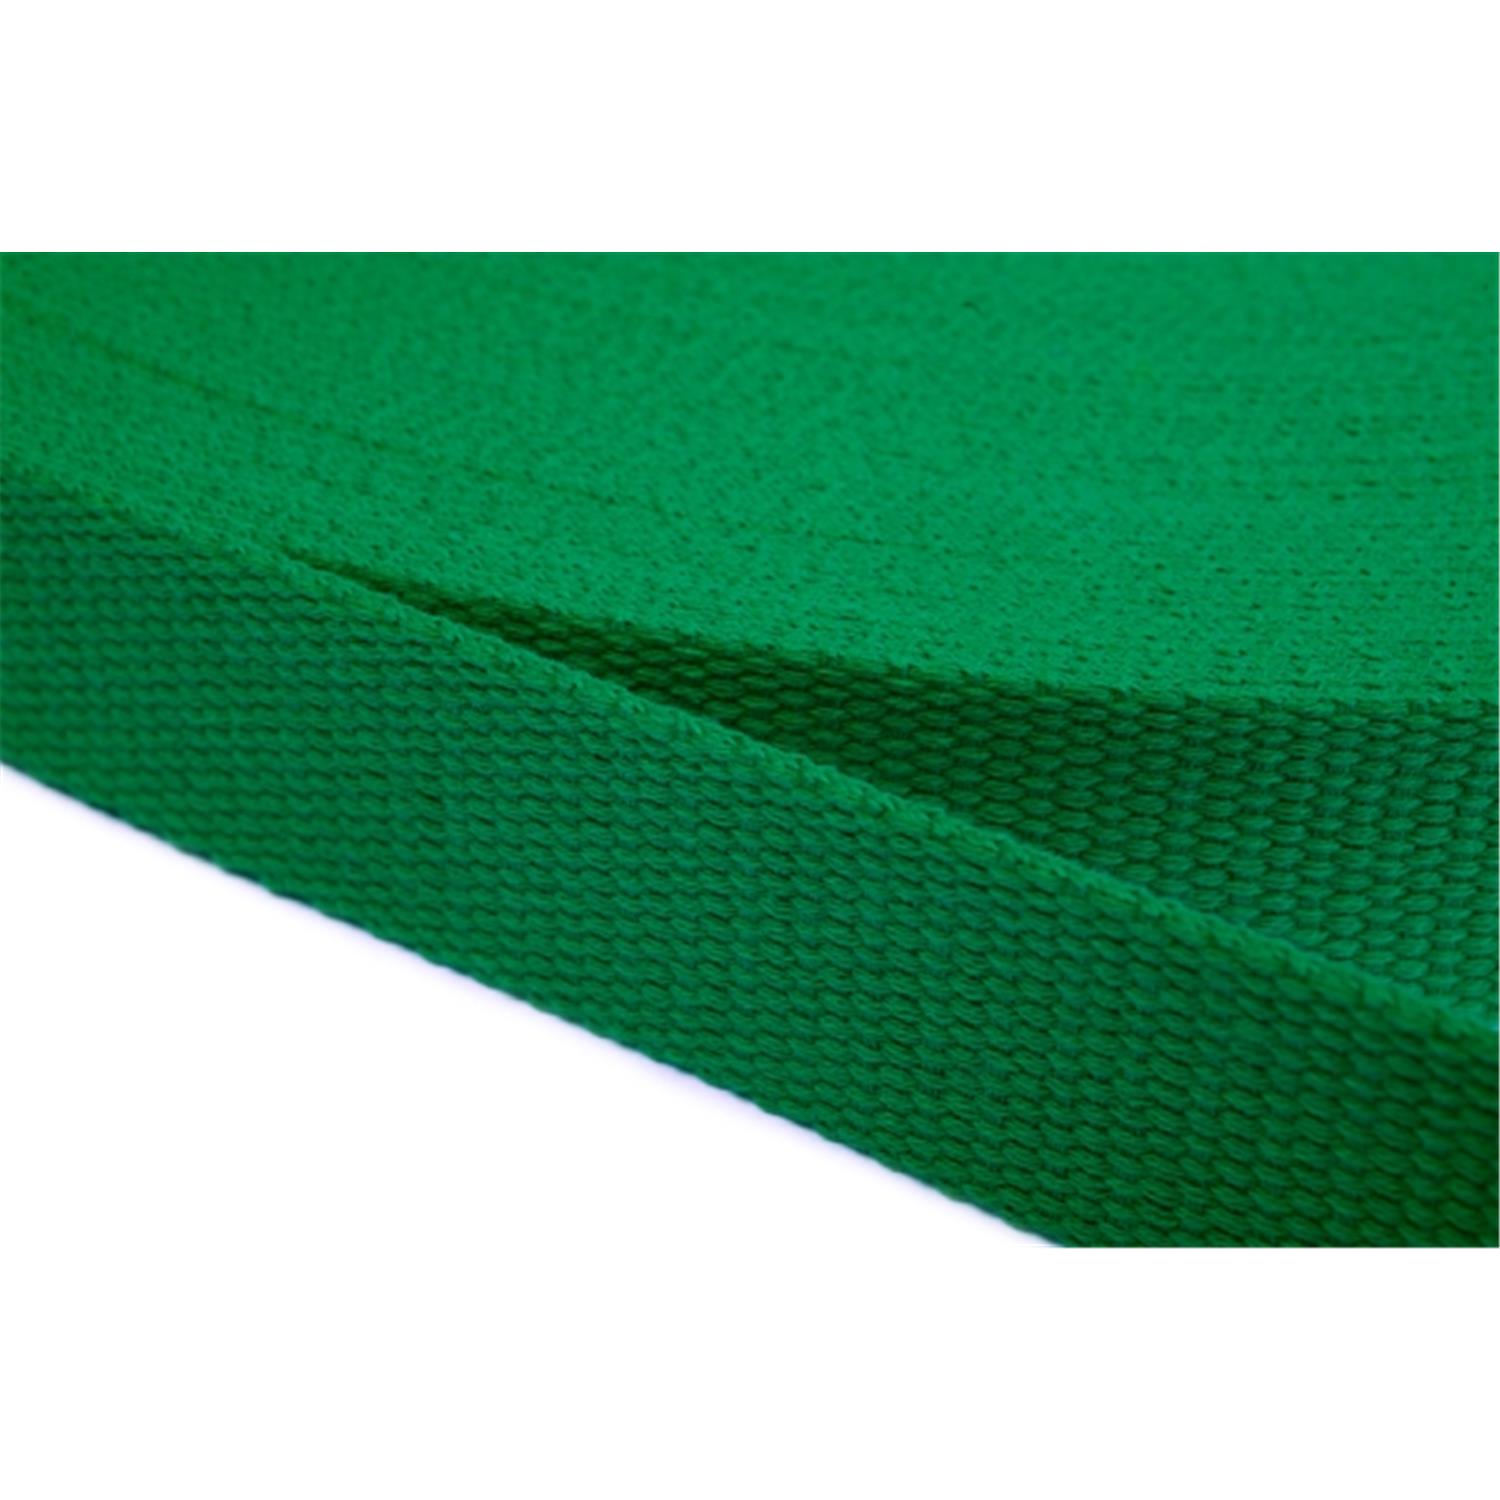 Gurtband aus Baumwolle 25mm in 20 Farben 16 - grün 6 Meter